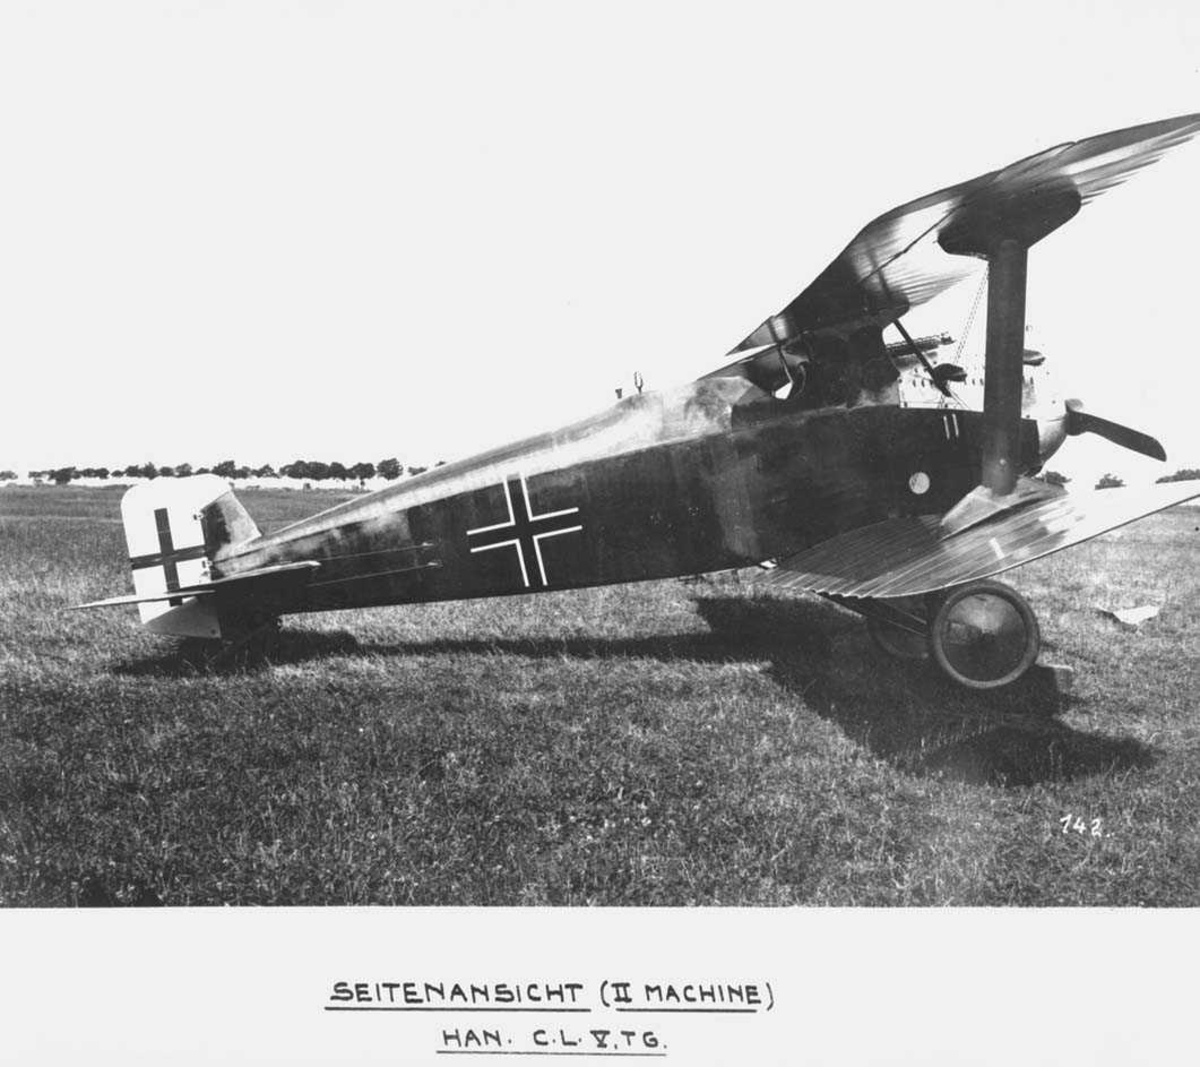 Ett fly på bakken. Hannover C.L.V.TG.